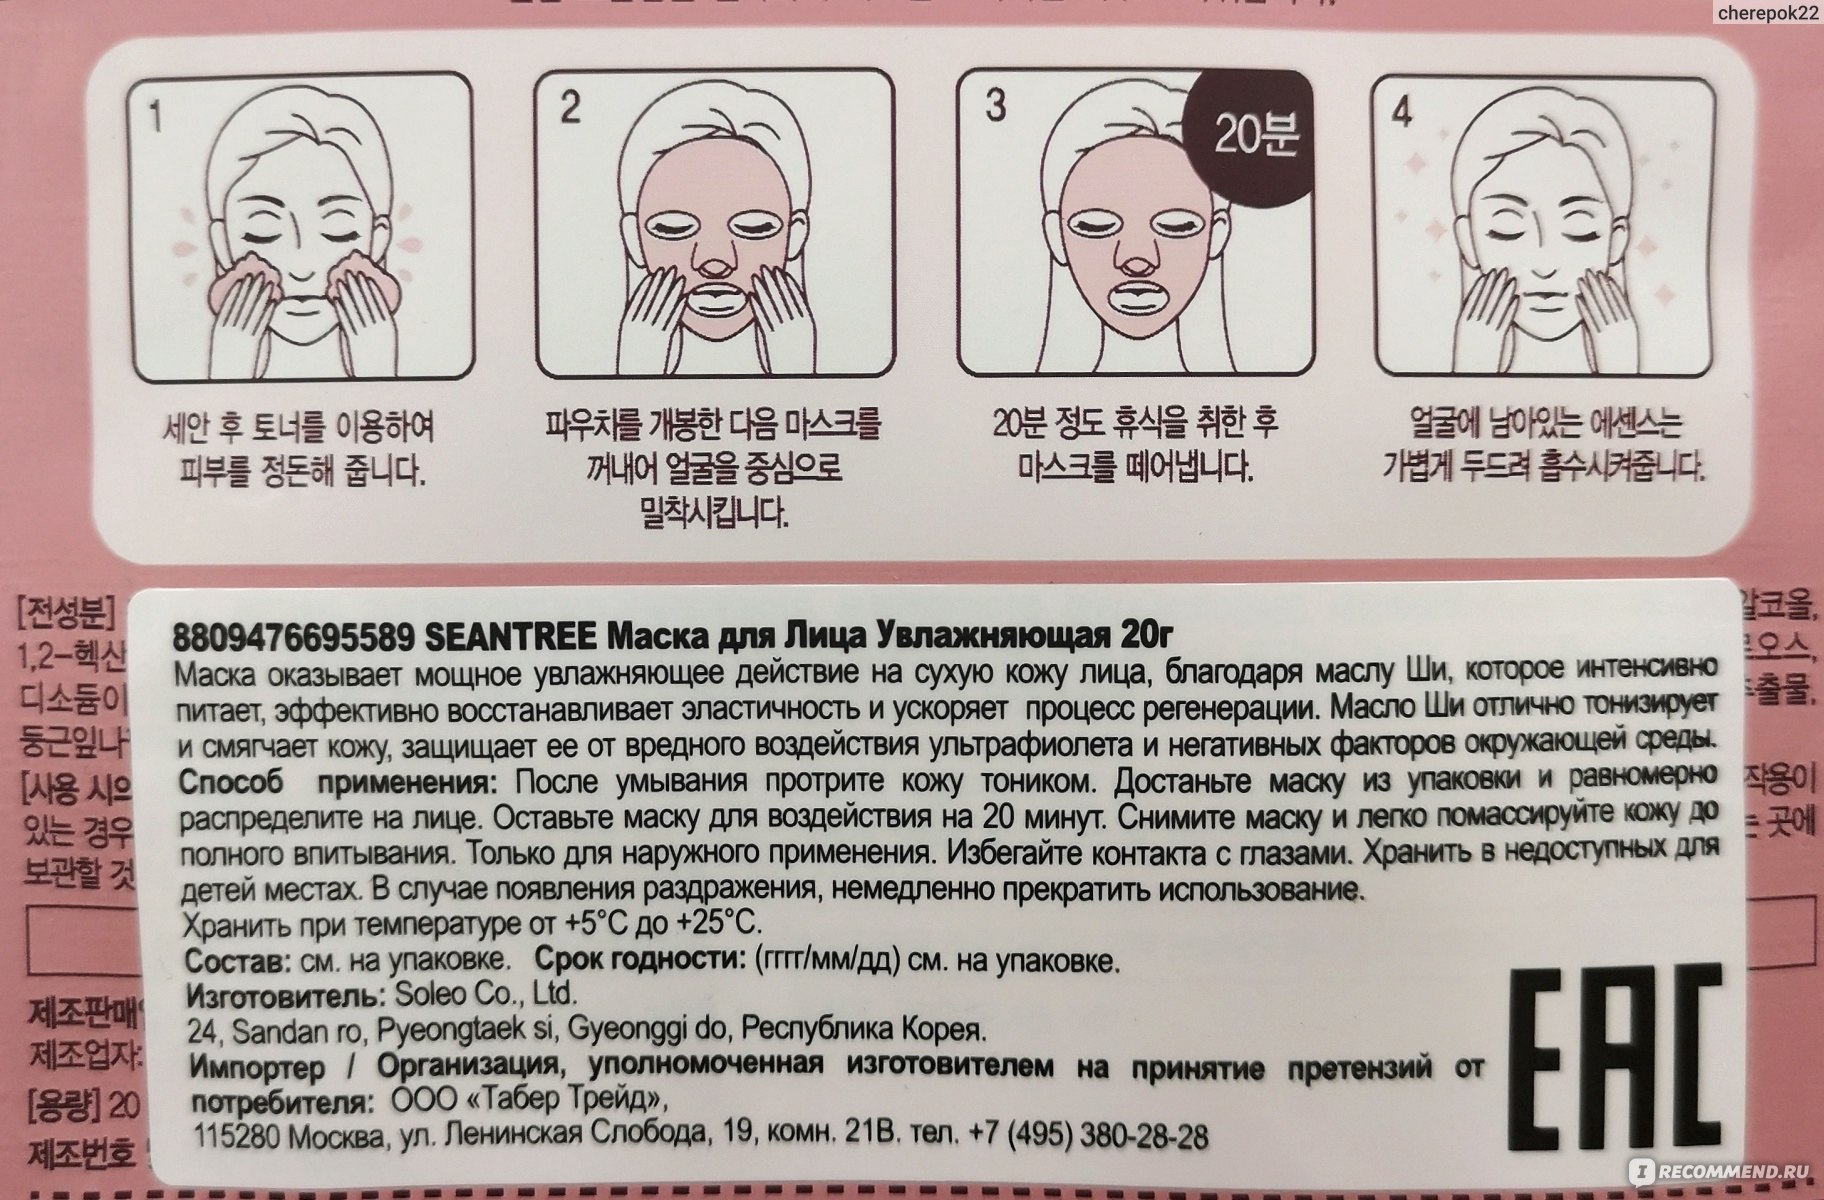 Способ применения корейских масок. Маски для лица тканевые инструкция. Корейская маска для воздействия. Тканевая маска для лица как пользоваться. Тканевая маска для лица как пользоваться правильно корейская.